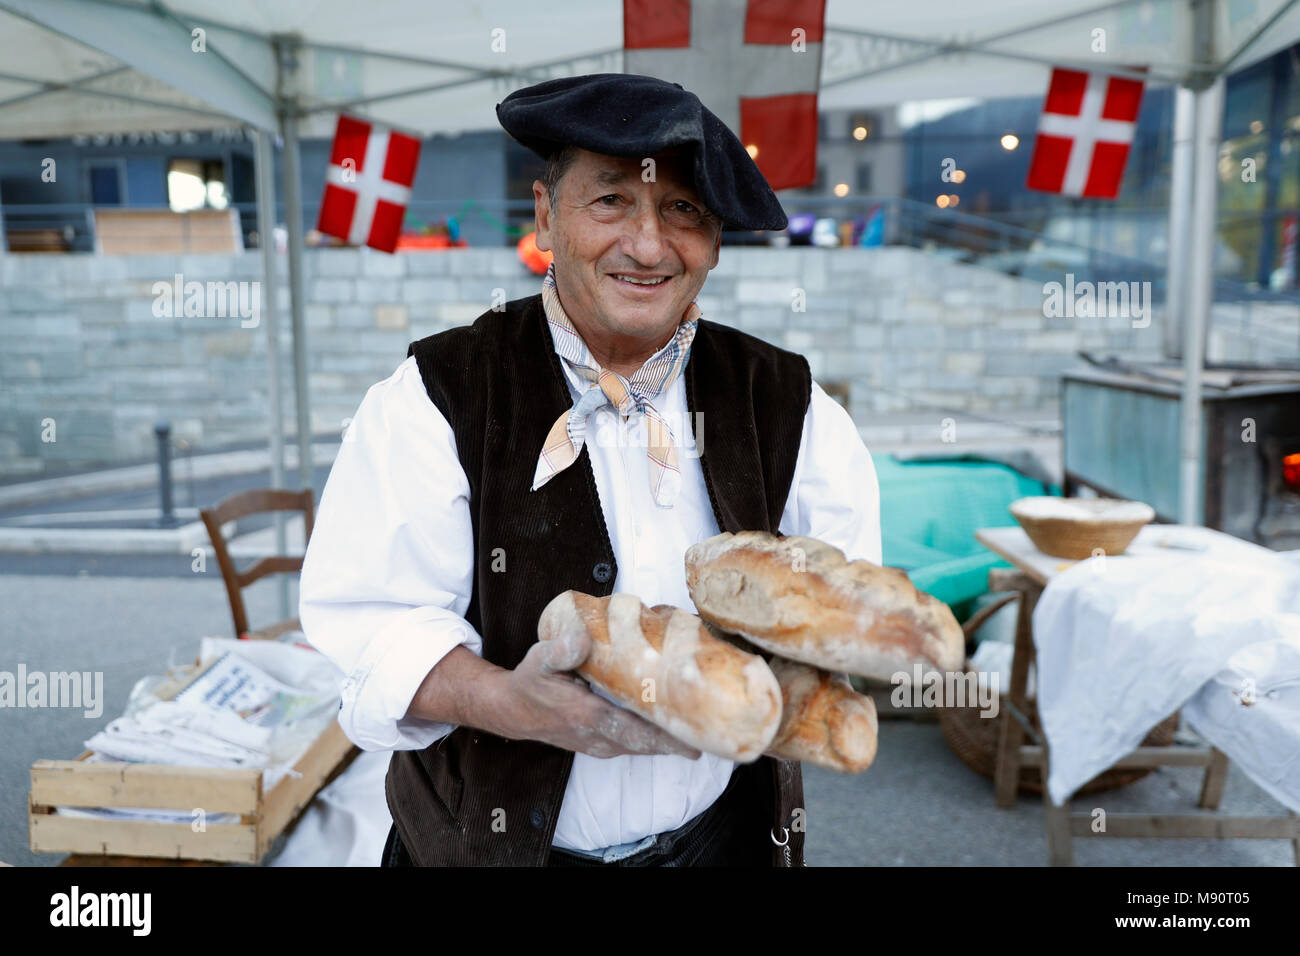 La feria agrícola (Comice Agricole) de Saint-Gervais-les-Bains. Hacer pan artesano de Baker. Foto de stock